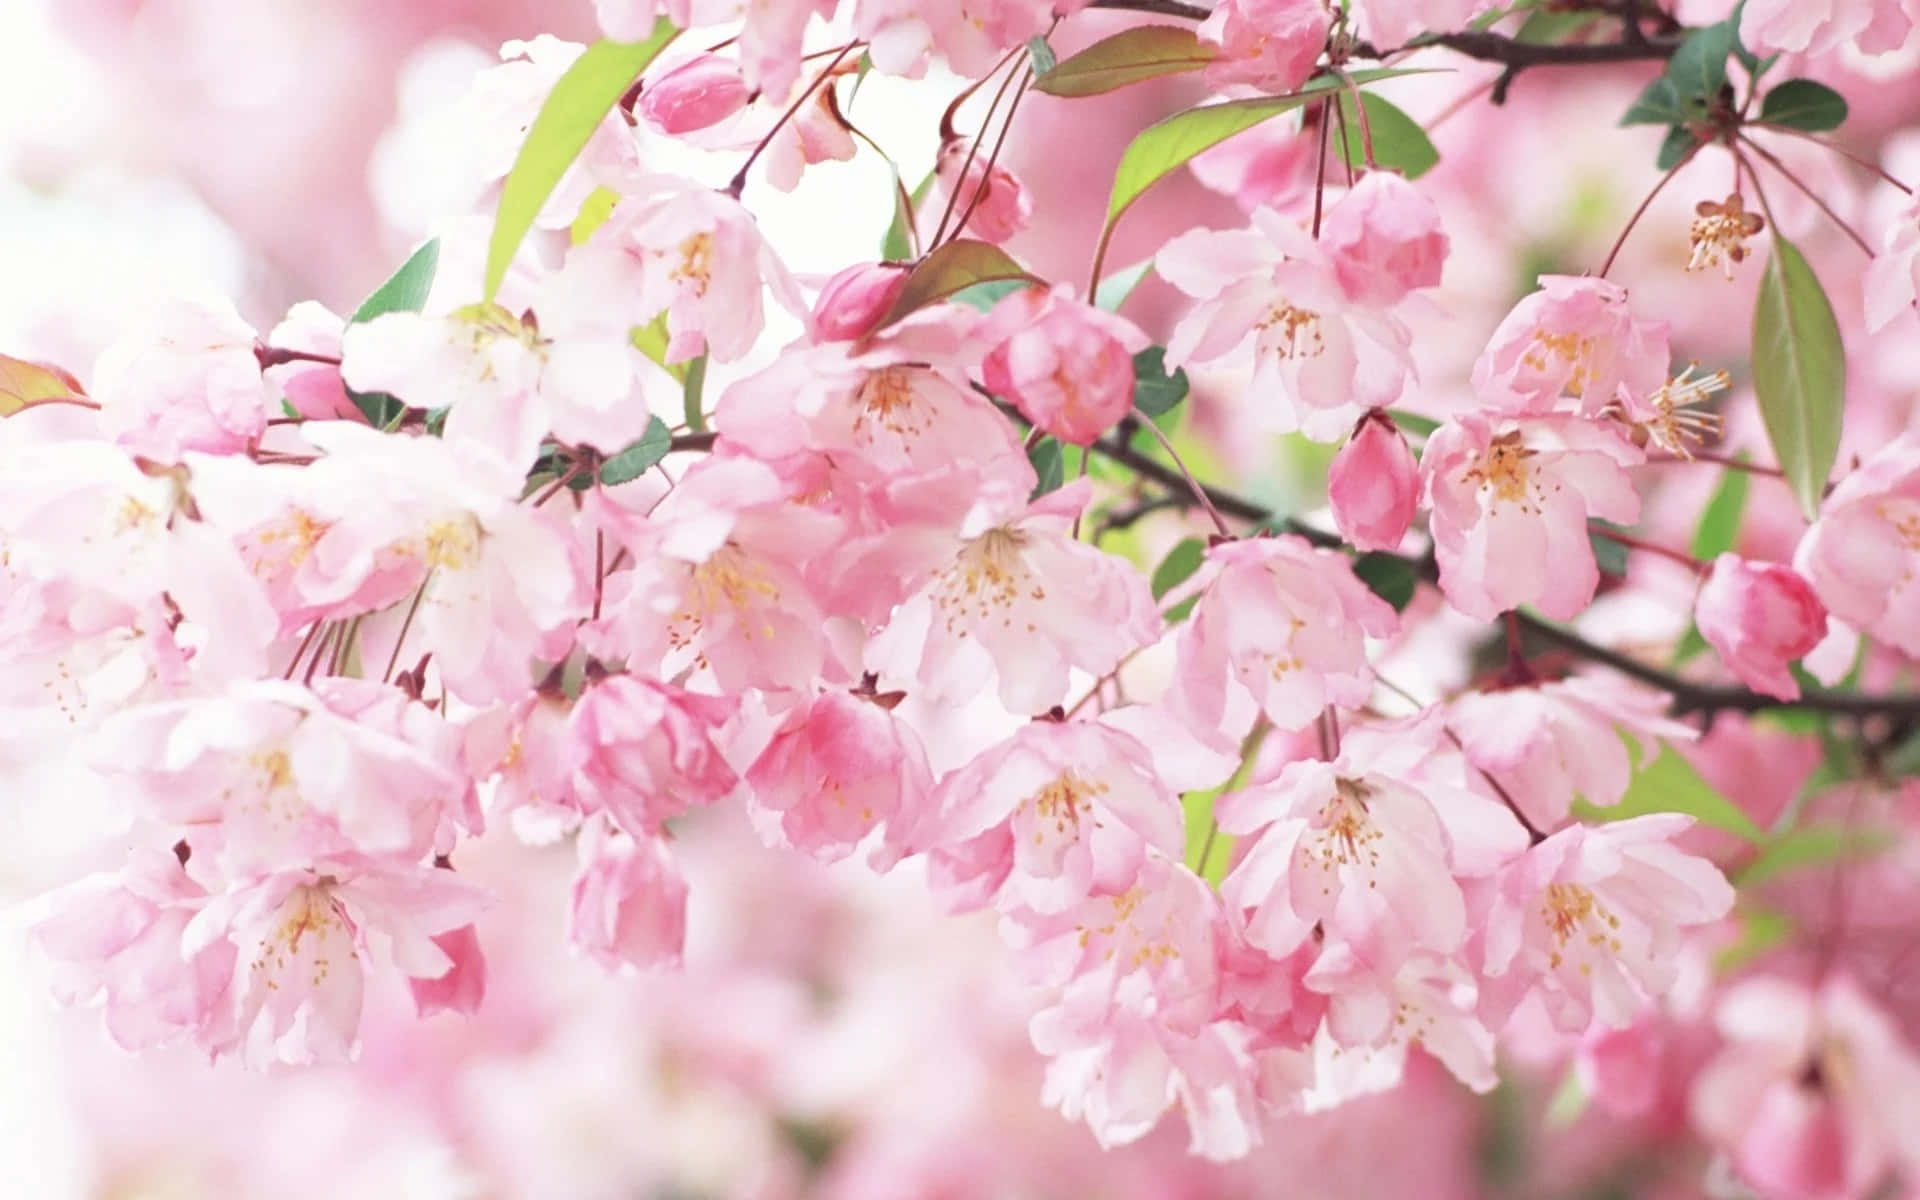 Unavista Panorámica De Los Árboles De Sakura/cerezo En Flor.